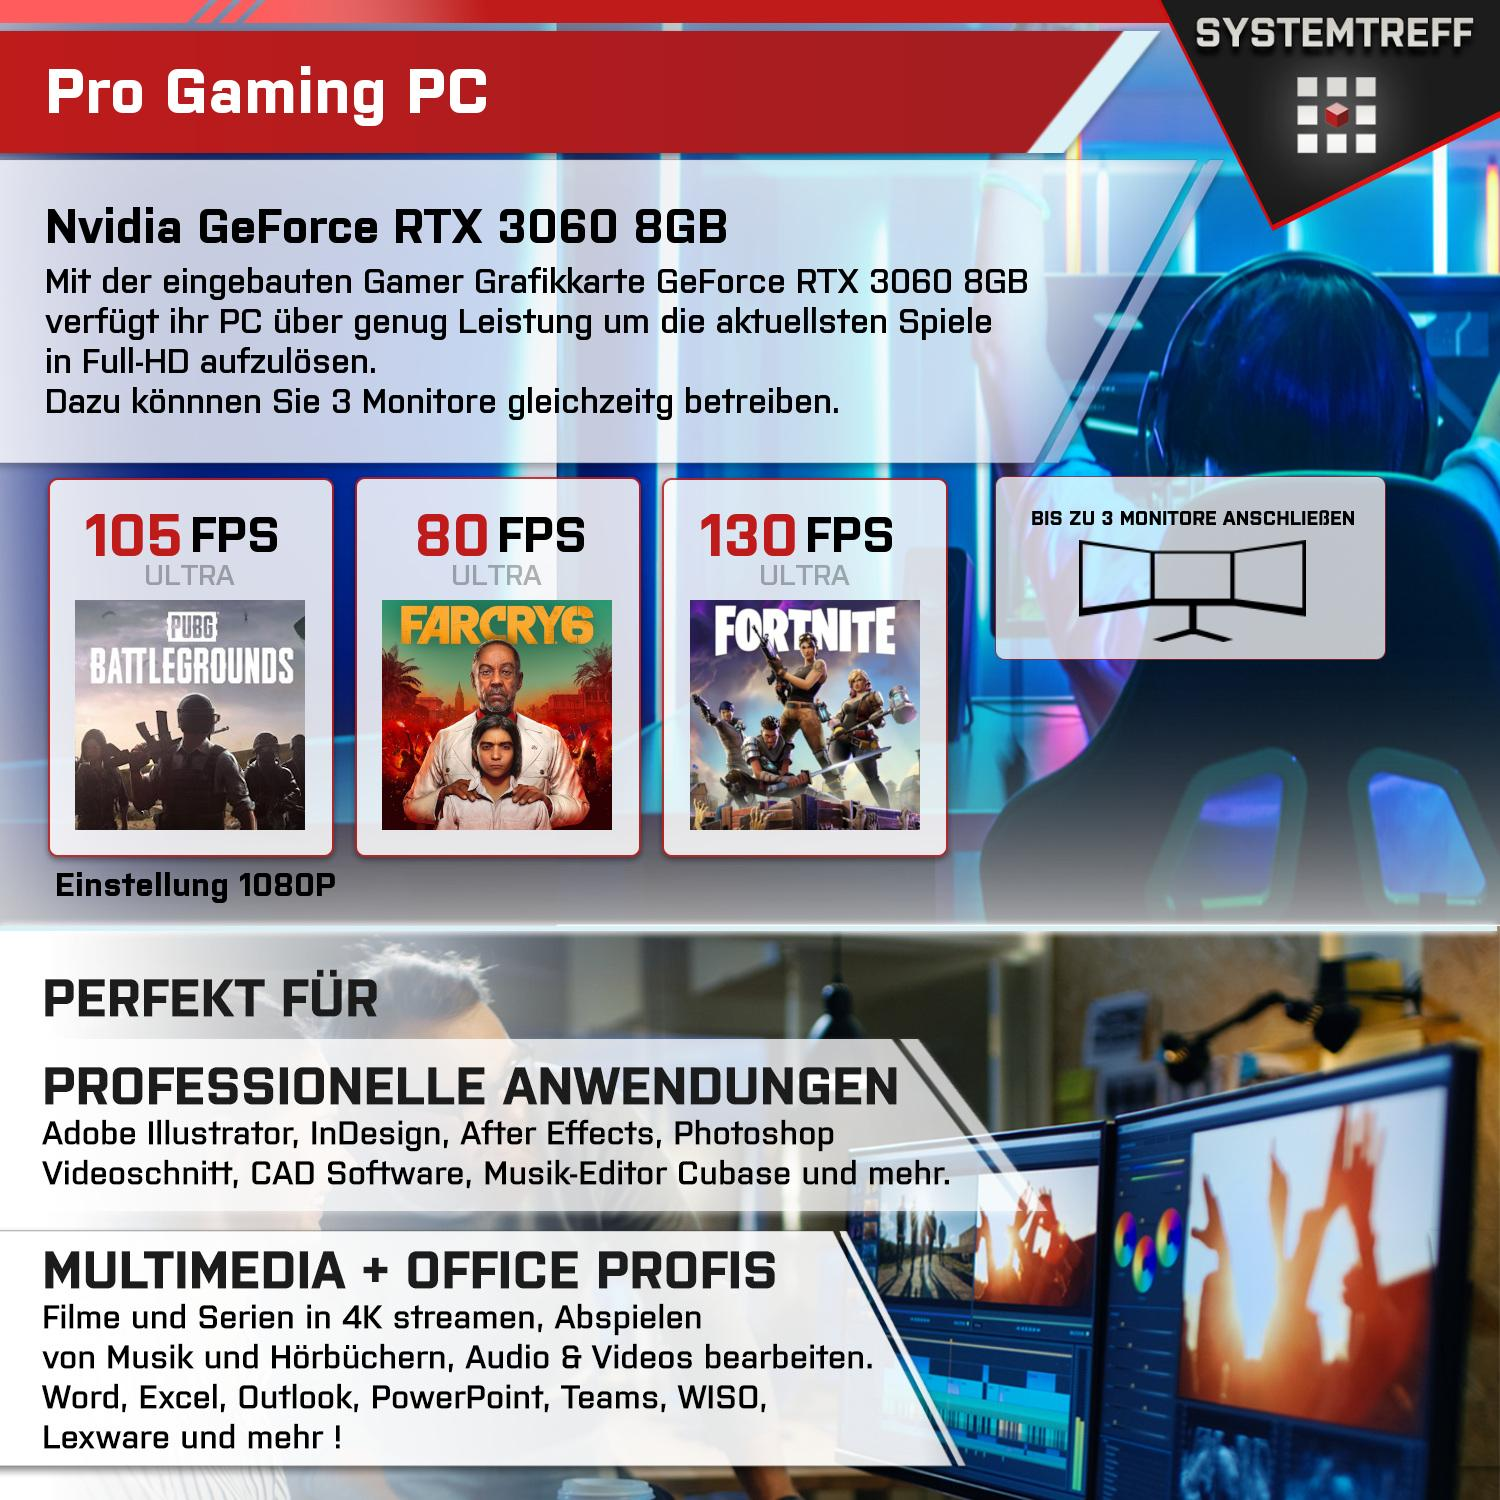 SYSTEMTREFF Gaming Komplett RAM, GeForce Komplett 1000 5 3060 RTX mit GDDR6, 8 Ryzen Prozessor, 8GB Nvidia GB AMD 5500, GB PC GB 16 mSSD, 5500